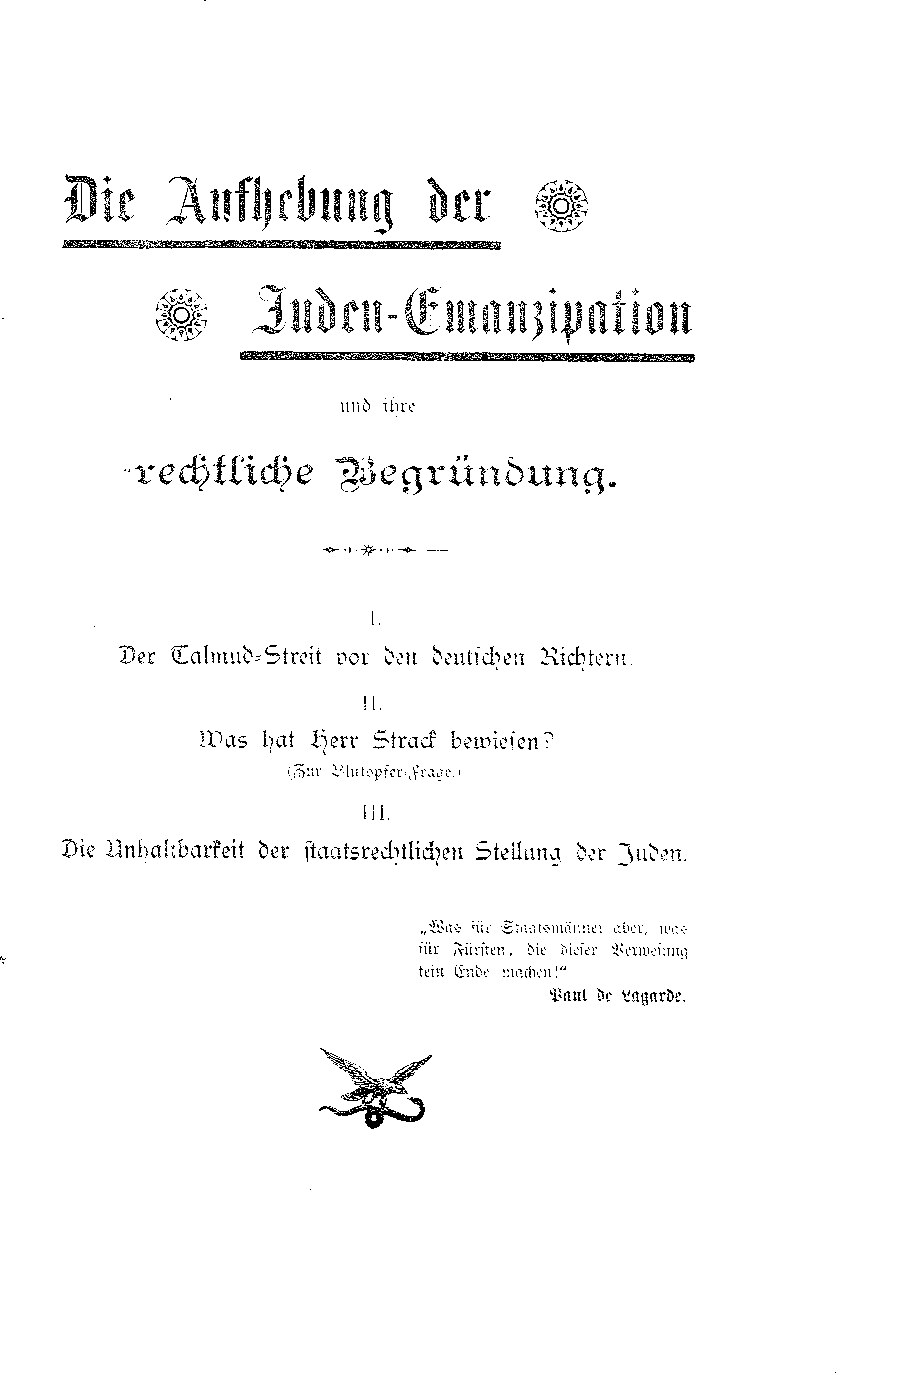 Die Aufhebung der Juden-Emanzipation und ihre rechtliche Begründung (1895, 123 S., Scan, Fraktur)